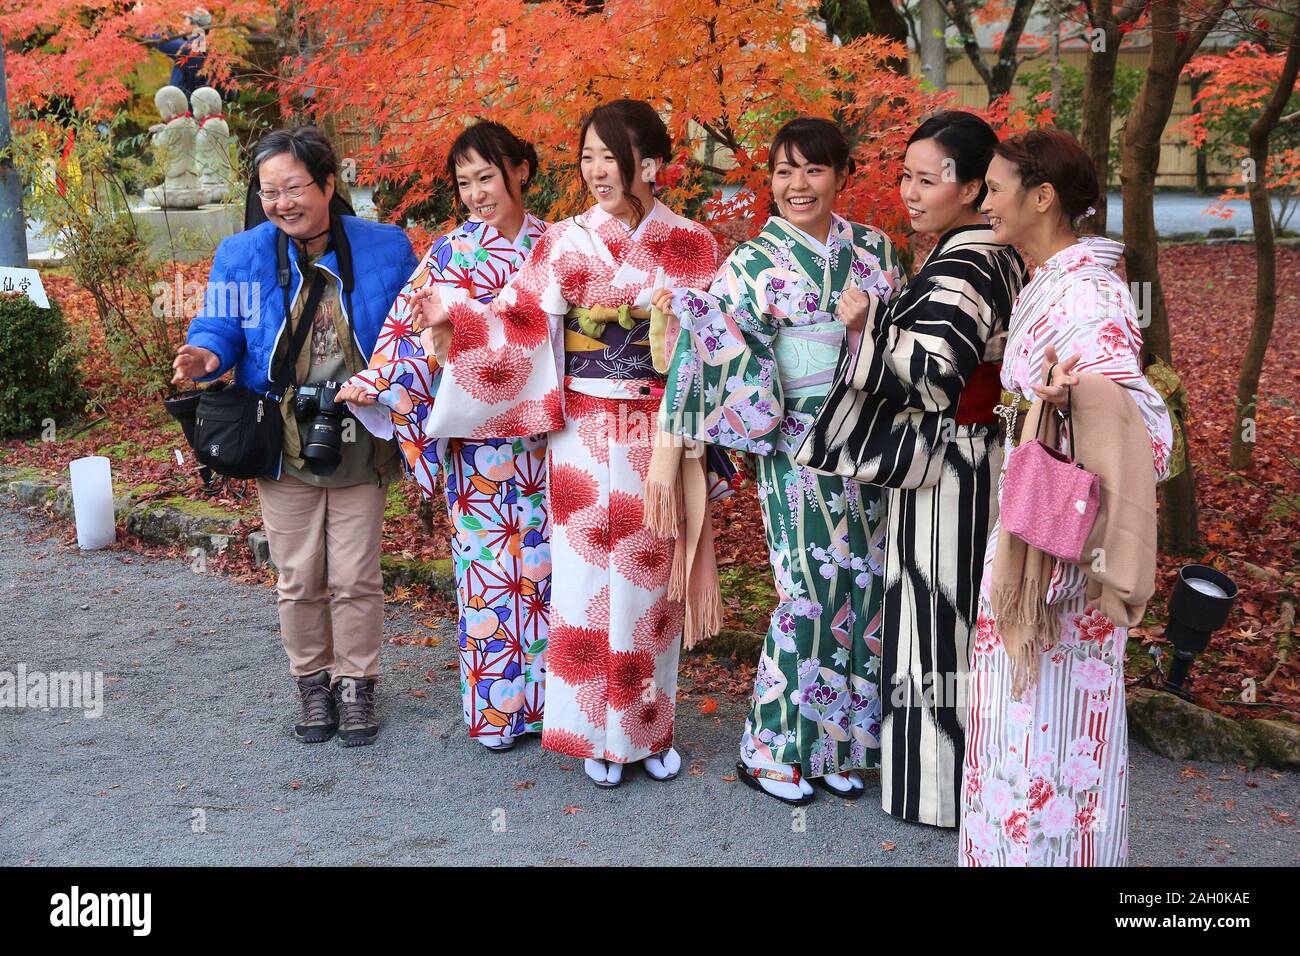 KYOTO, JAPAN - November 24, 2016: Frauen im Kimono nehmen Sie Fotos mit Blätter im Herbst von Ahorn (momiji) in Kyoto, Japan. Blätter im Herbst Bewunderung (koyo) ist Stockfoto